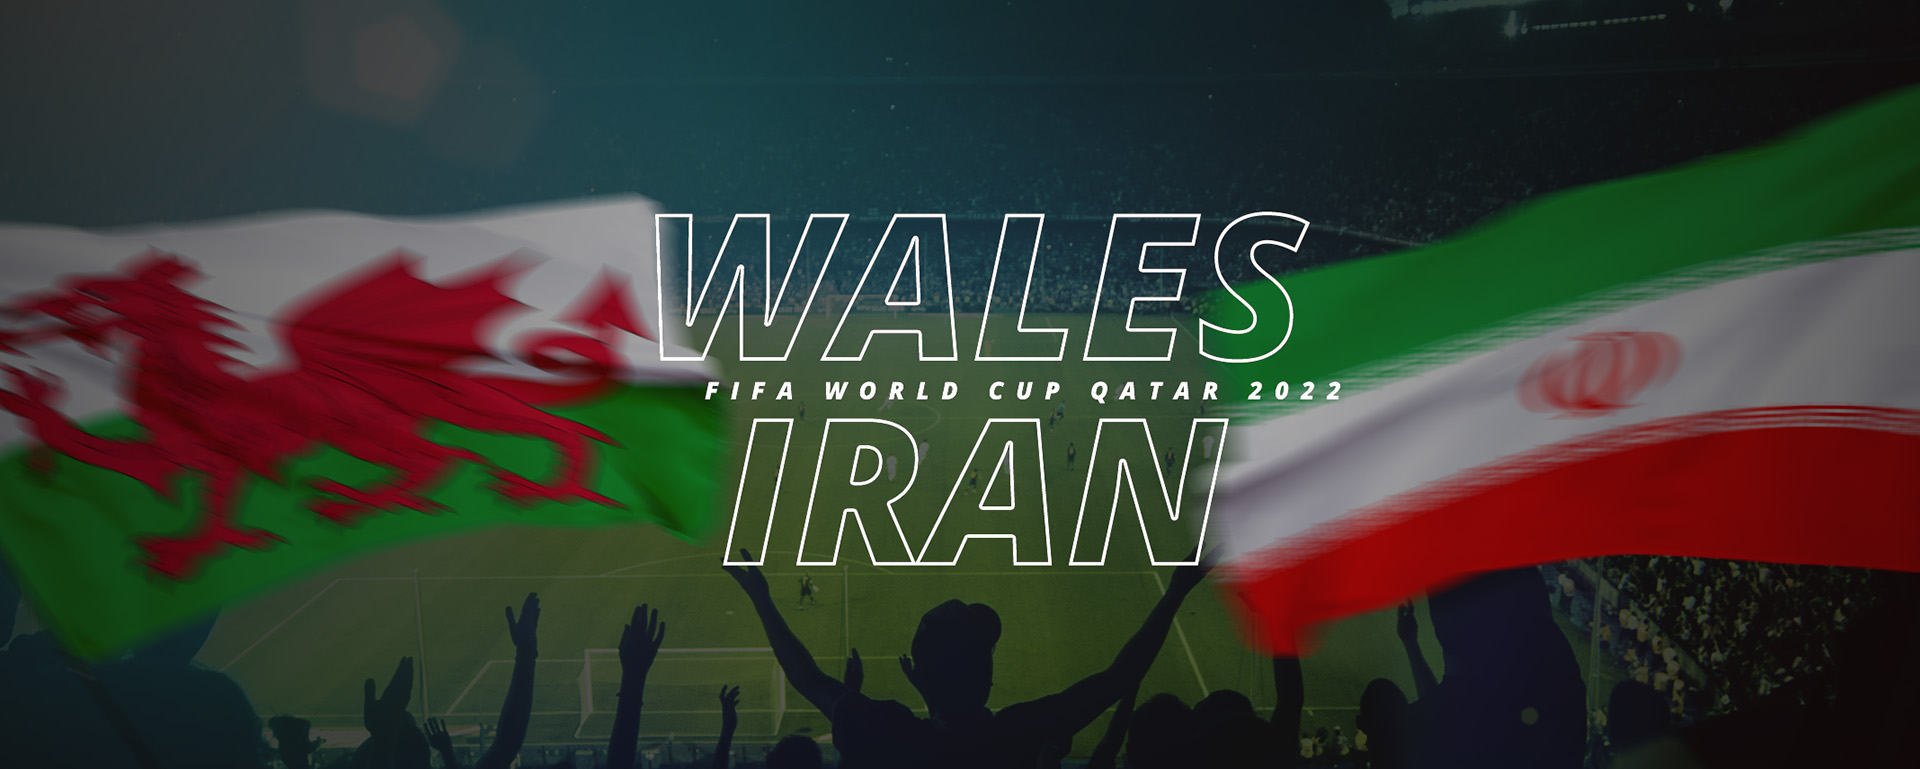 WALES VS IRAN | FIFA WORLD CUP QATAR 2022